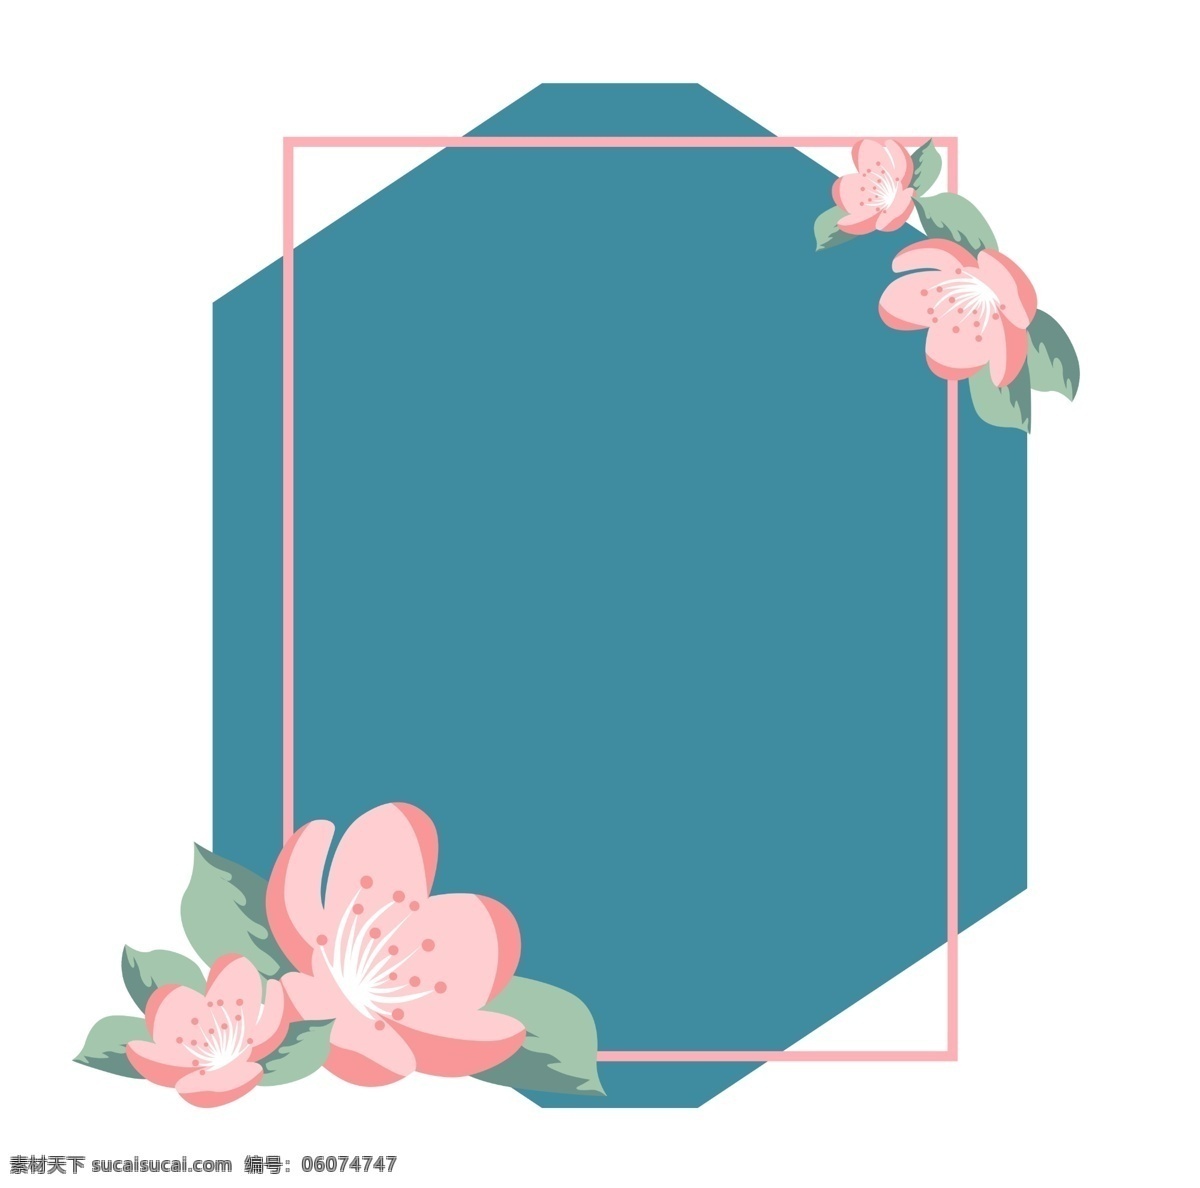 母亲节 不规则 主题 边框 植物 几何图形 矩形边框 粉色边框 蓝色 花 矢量花朵 温馨 清新 主题边框